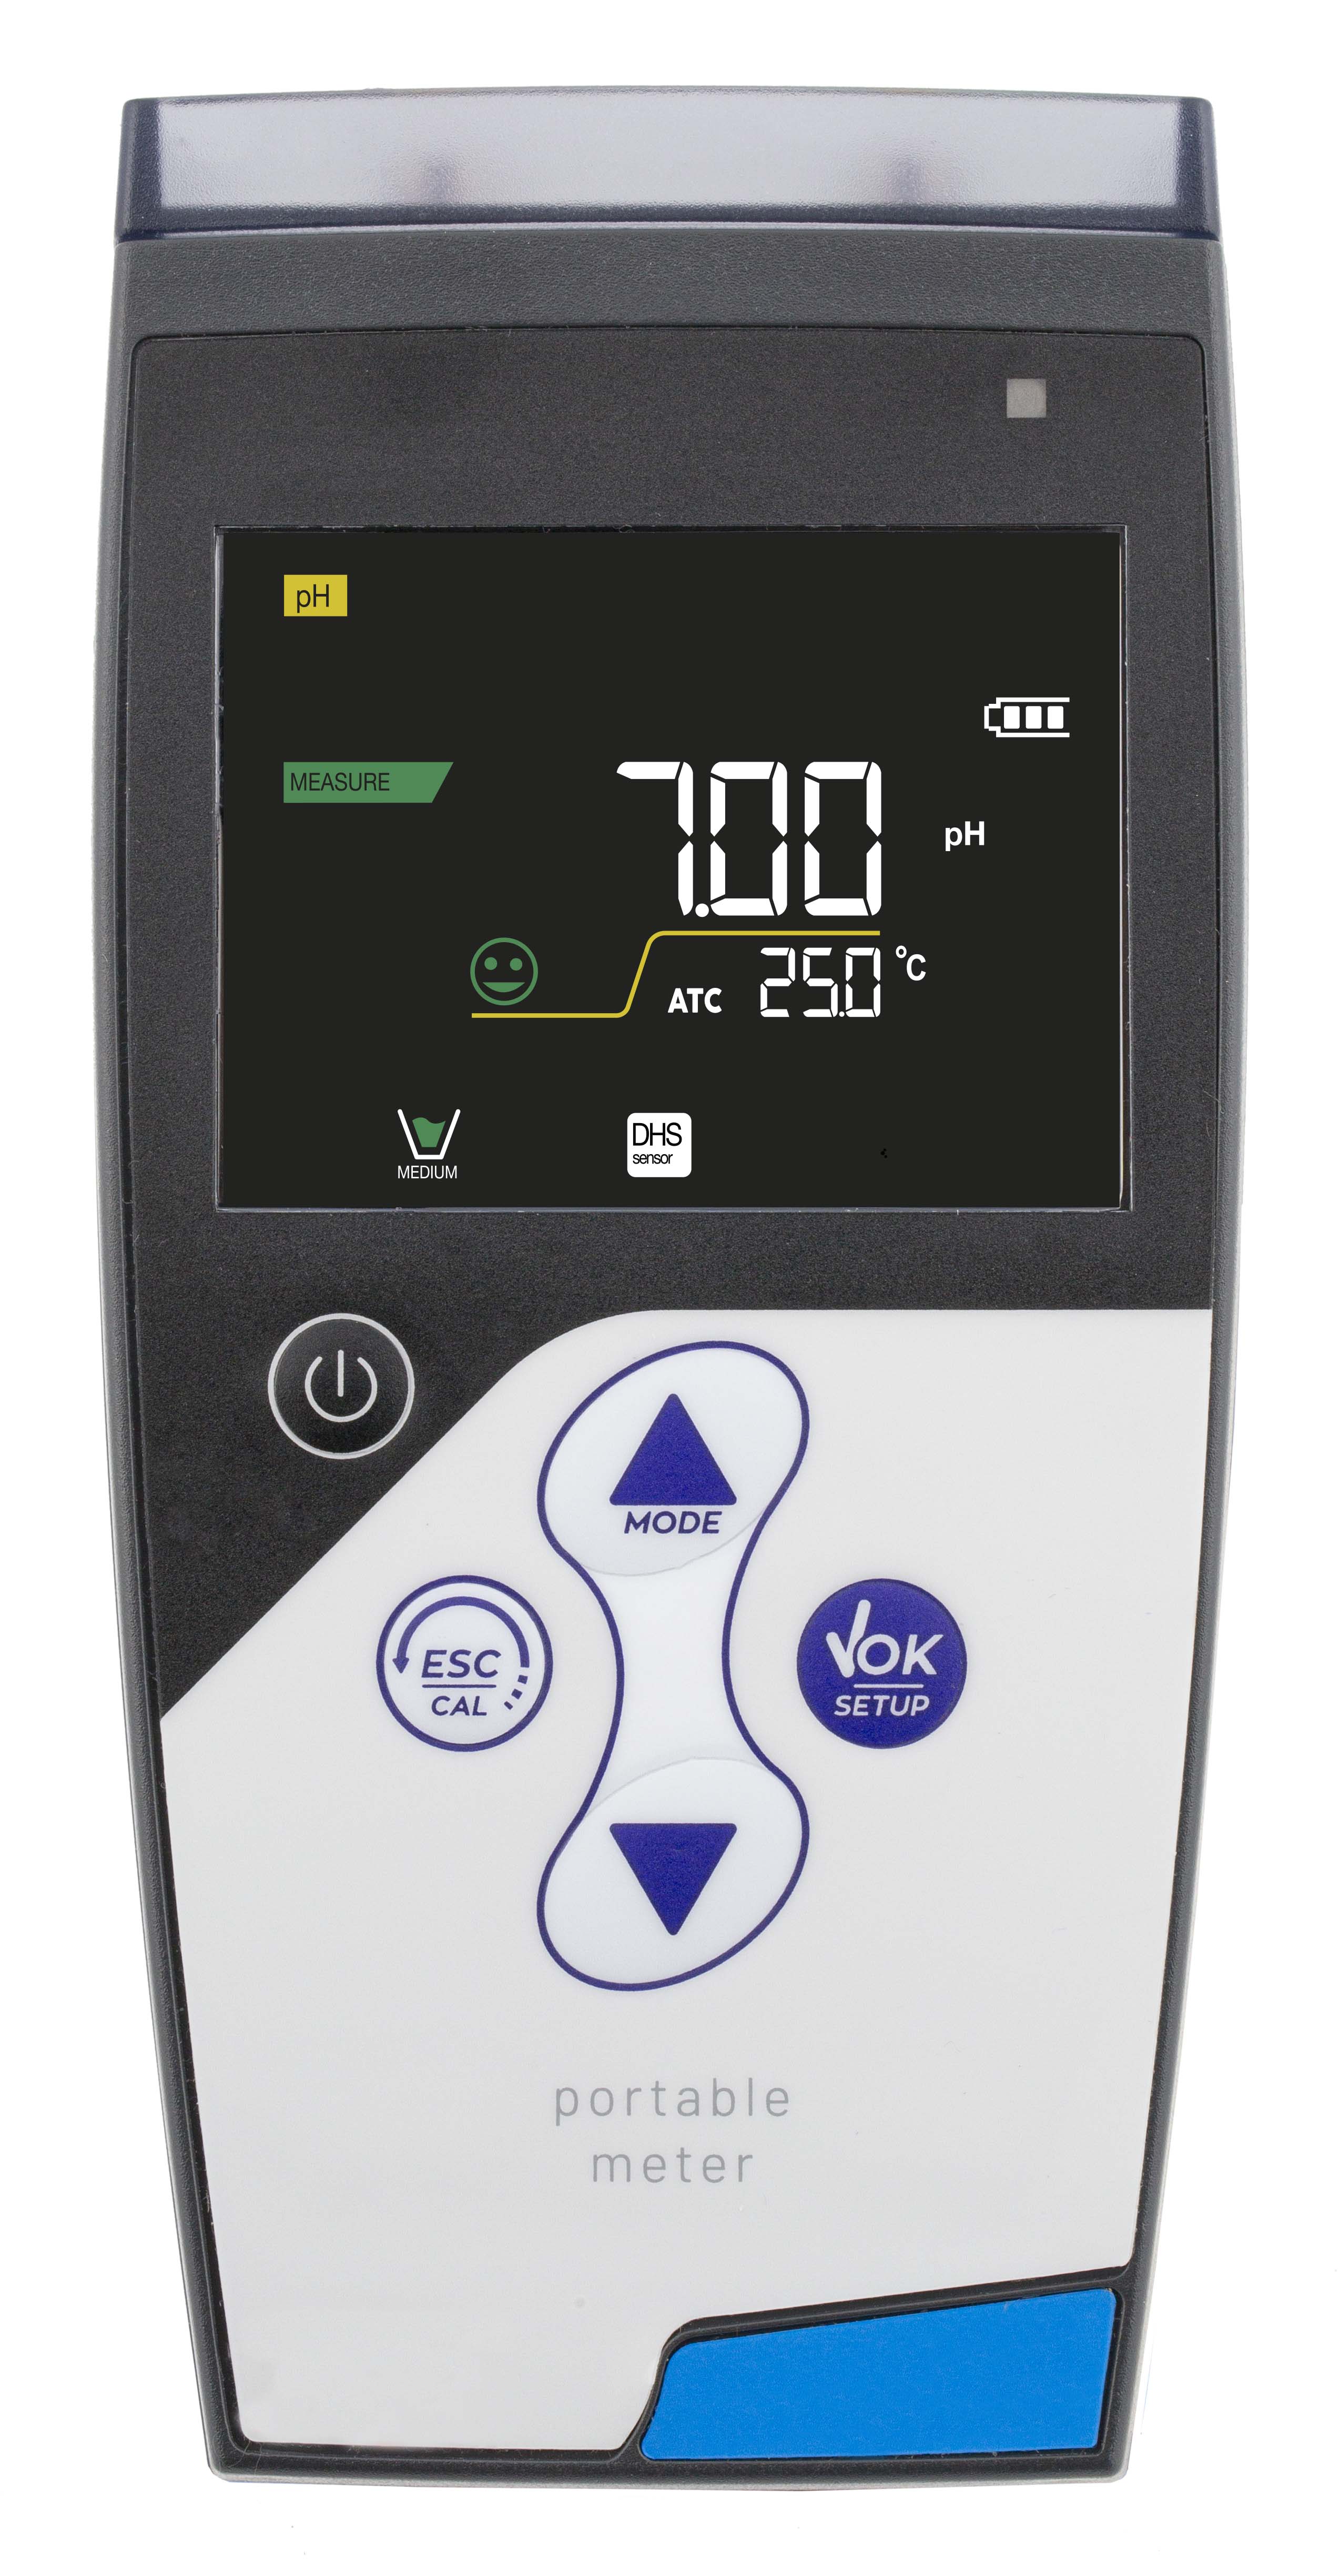 XS PC 7 Vio pH/mV/Redox/Leitfähigkeit/TDS/Temperatur Handmessgerät im Koffer inklusive 201T pH- und 2301T Leitfähigkeitselektrode mit integrierten Temperaturfühlern